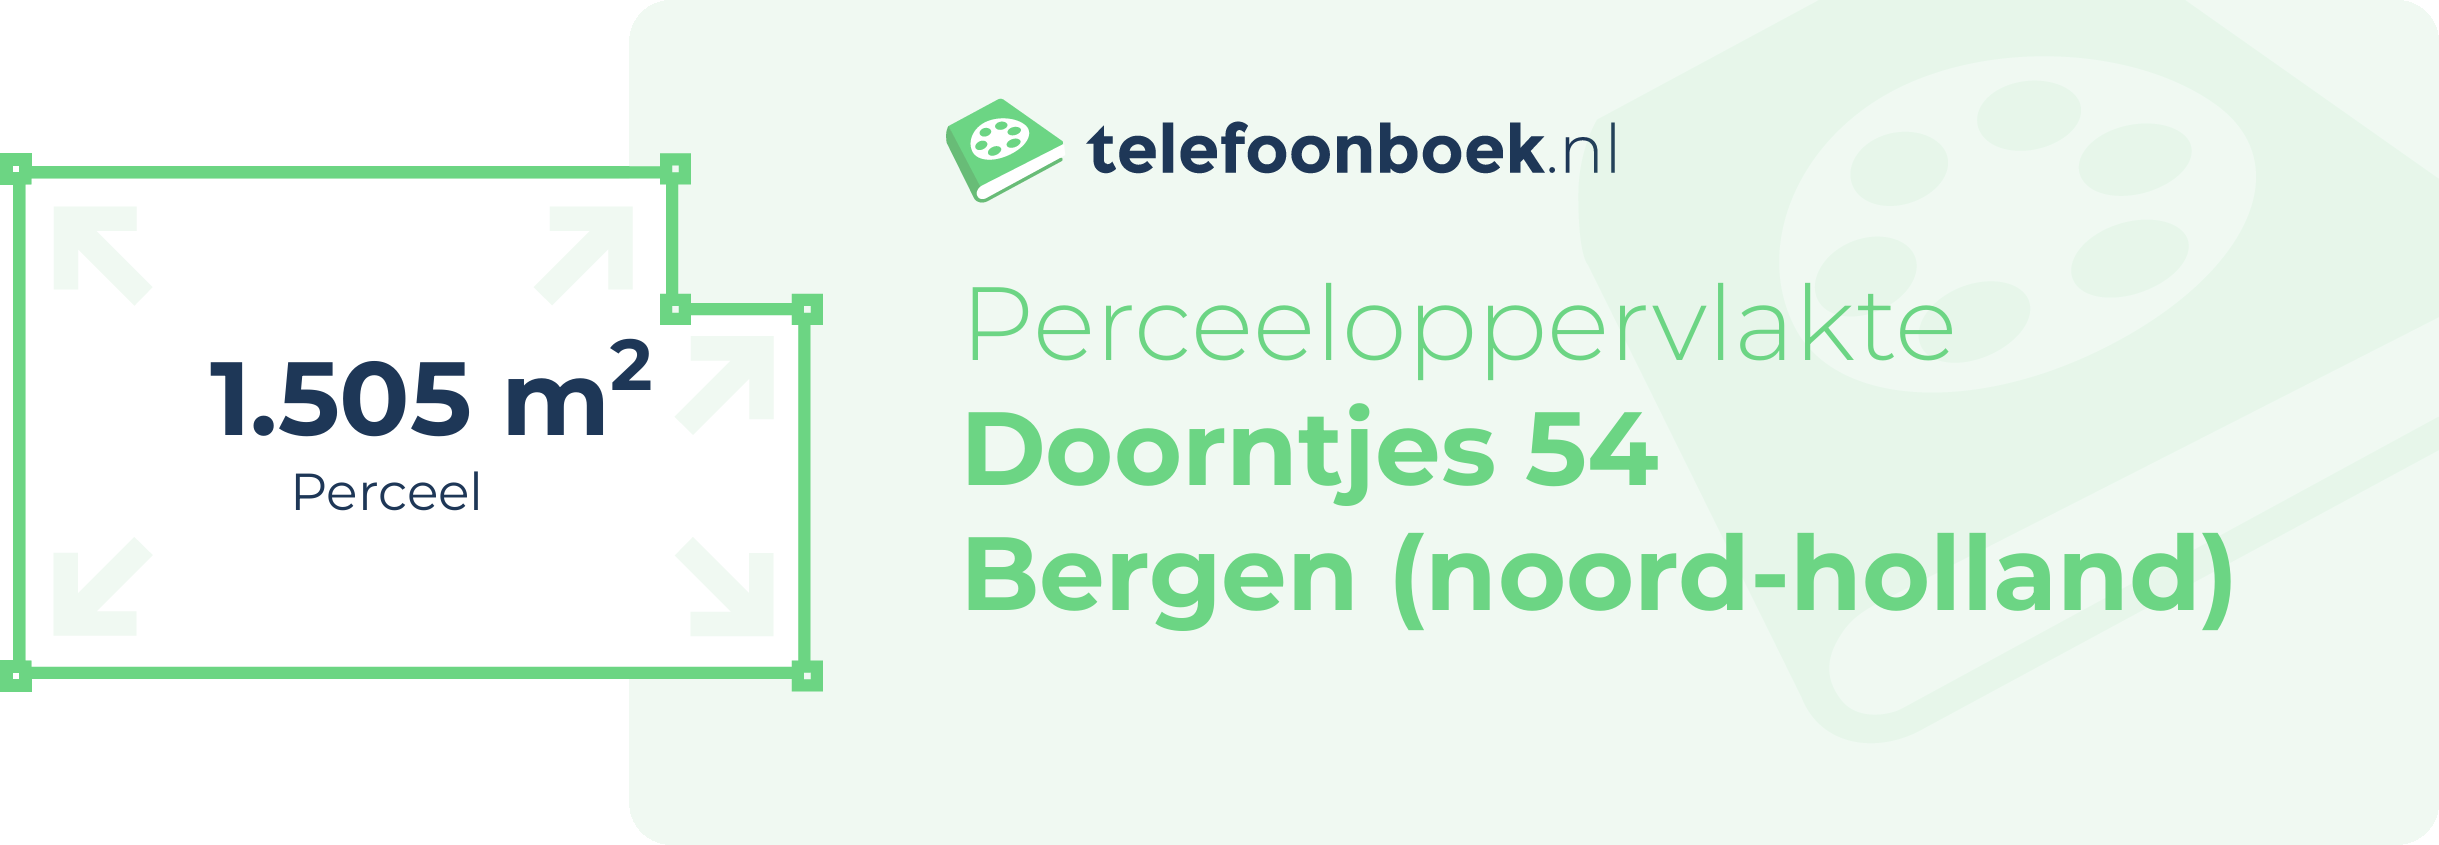 Perceeloppervlakte Doorntjes 54 Bergen (Noord-Holland)